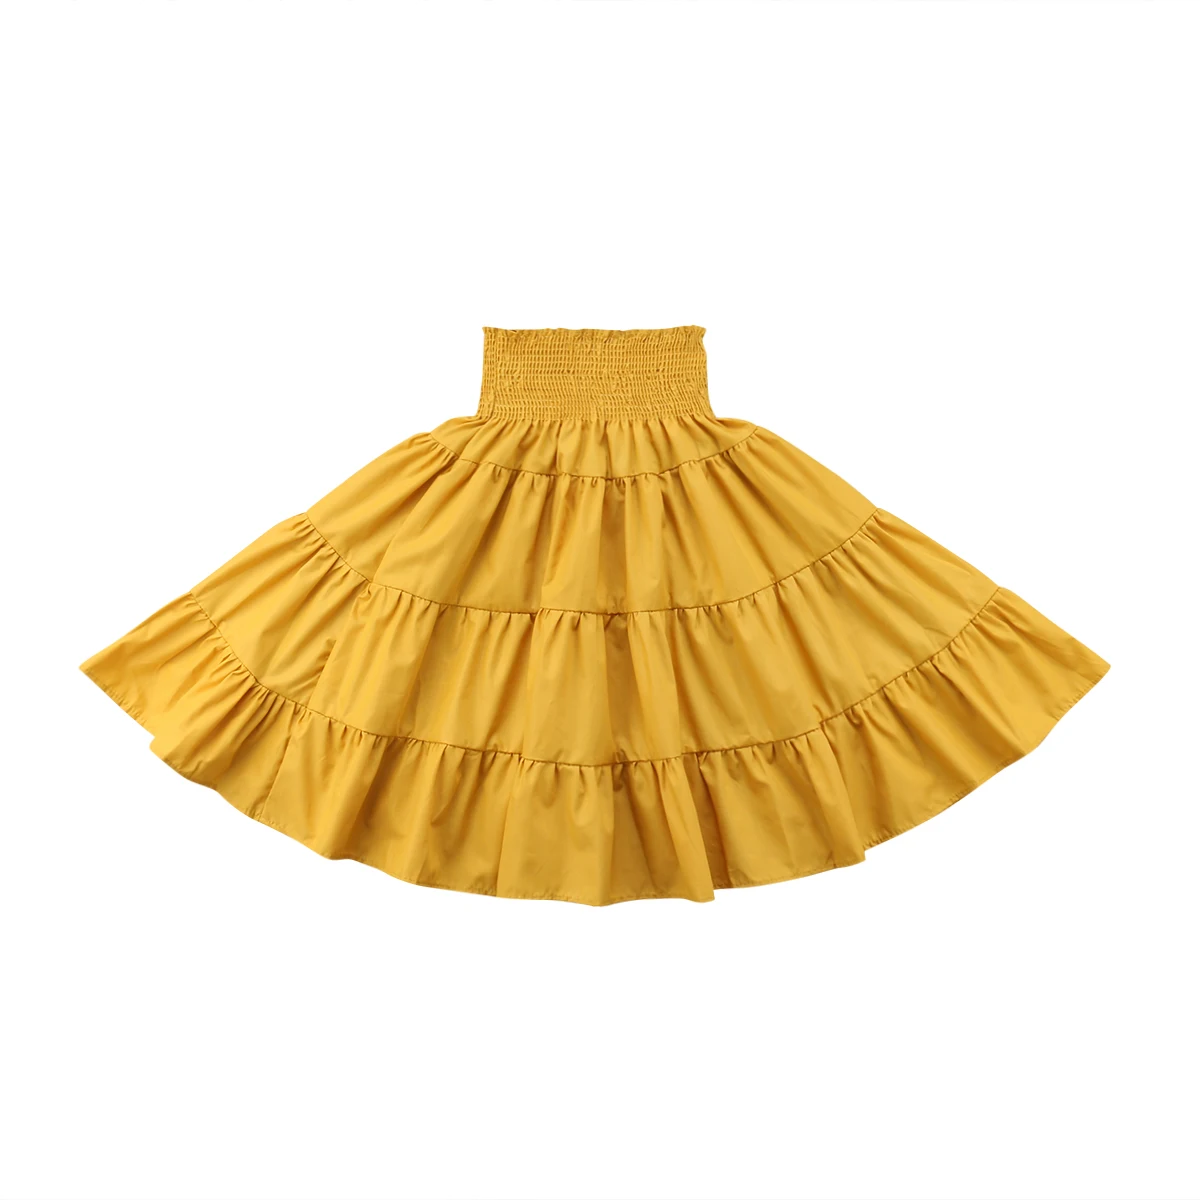 Малышей юбки для девочек эластичные Высокая Талия плиссированная юбка Повседневное длинные юбки Одежда Размеры От 2 до 5 лет - Цвет: Цвет: желтый